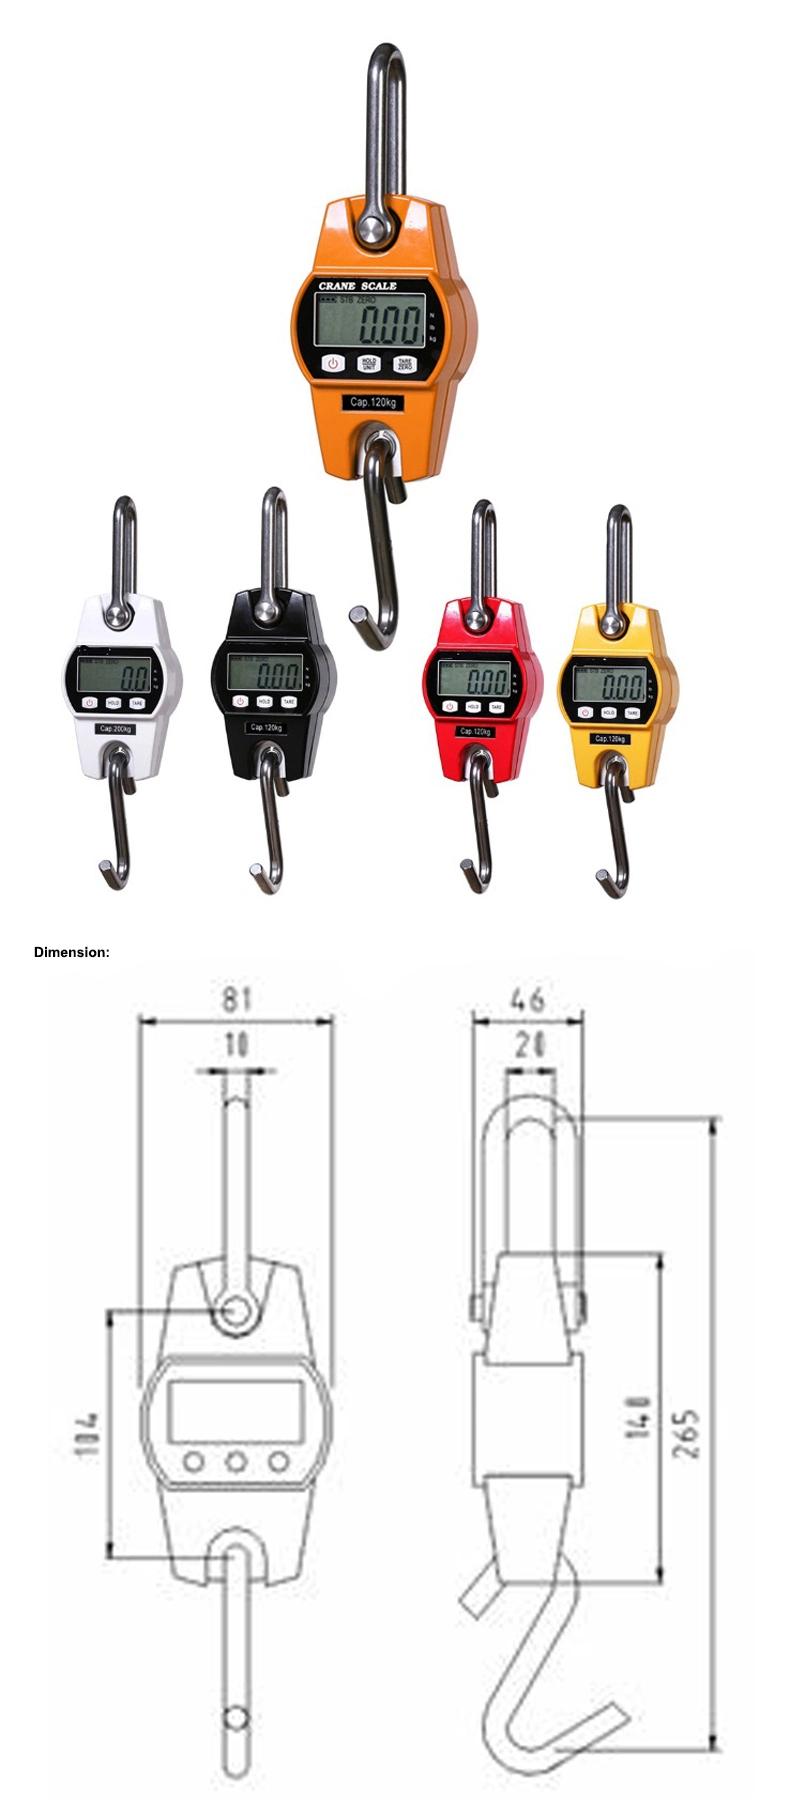 Mini Diginal Hanging Crane Scale